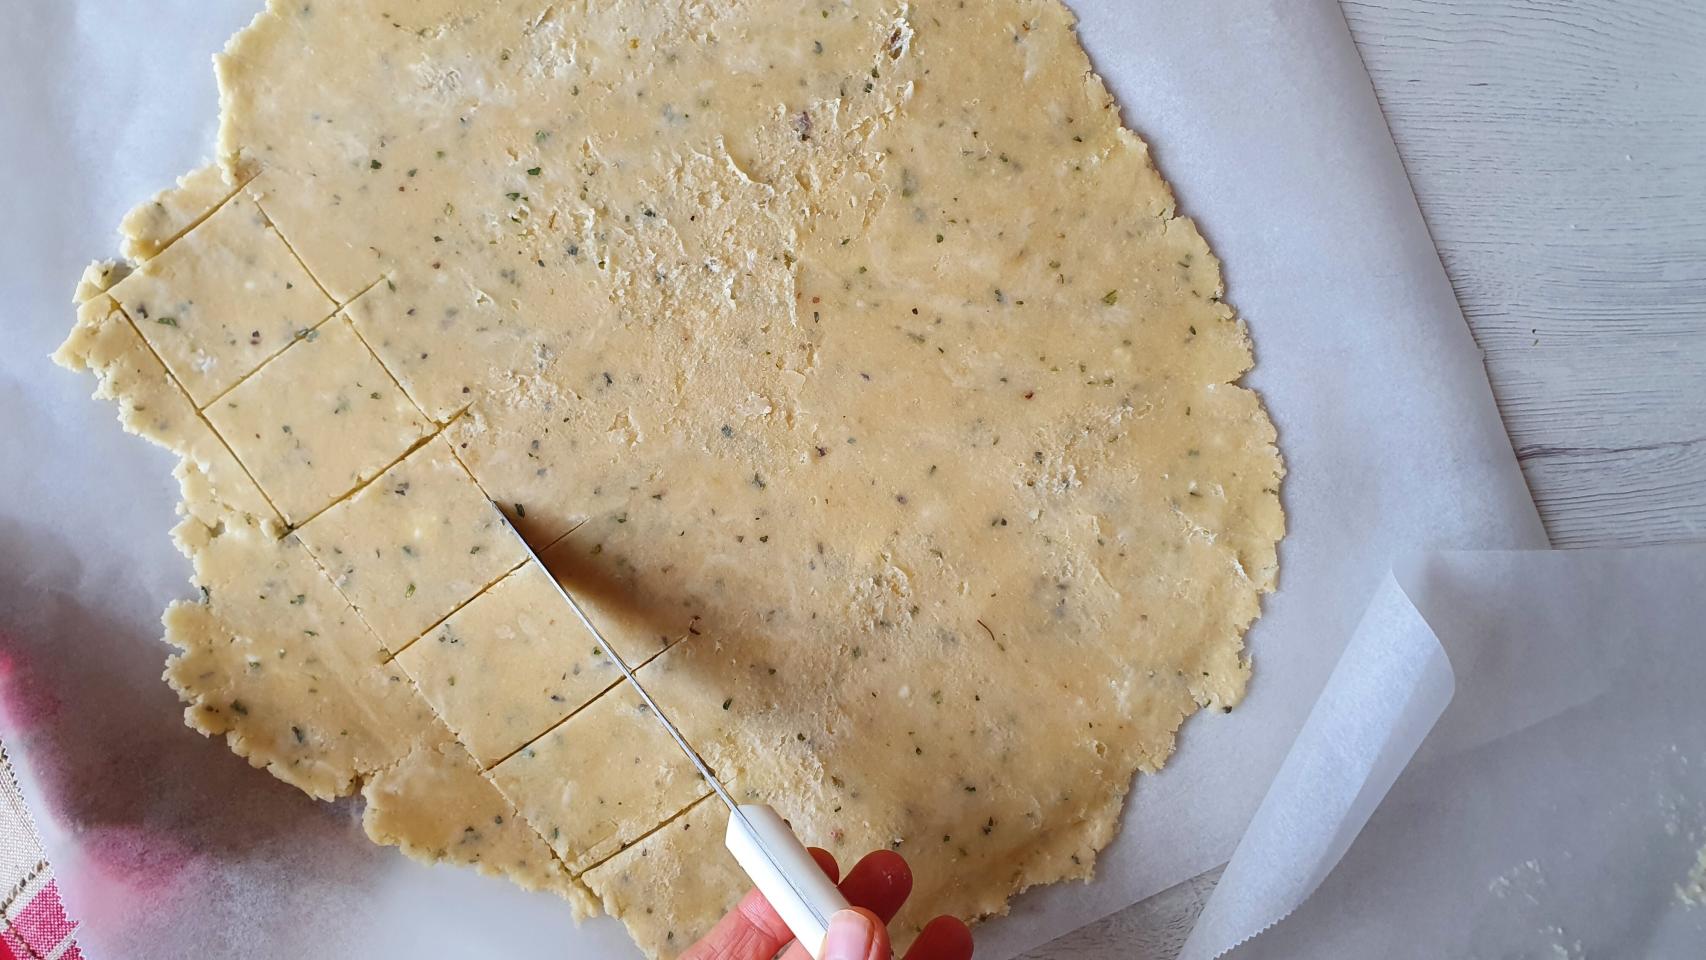 Galletas saladas crackers, receta de picoteo fácil de preparar